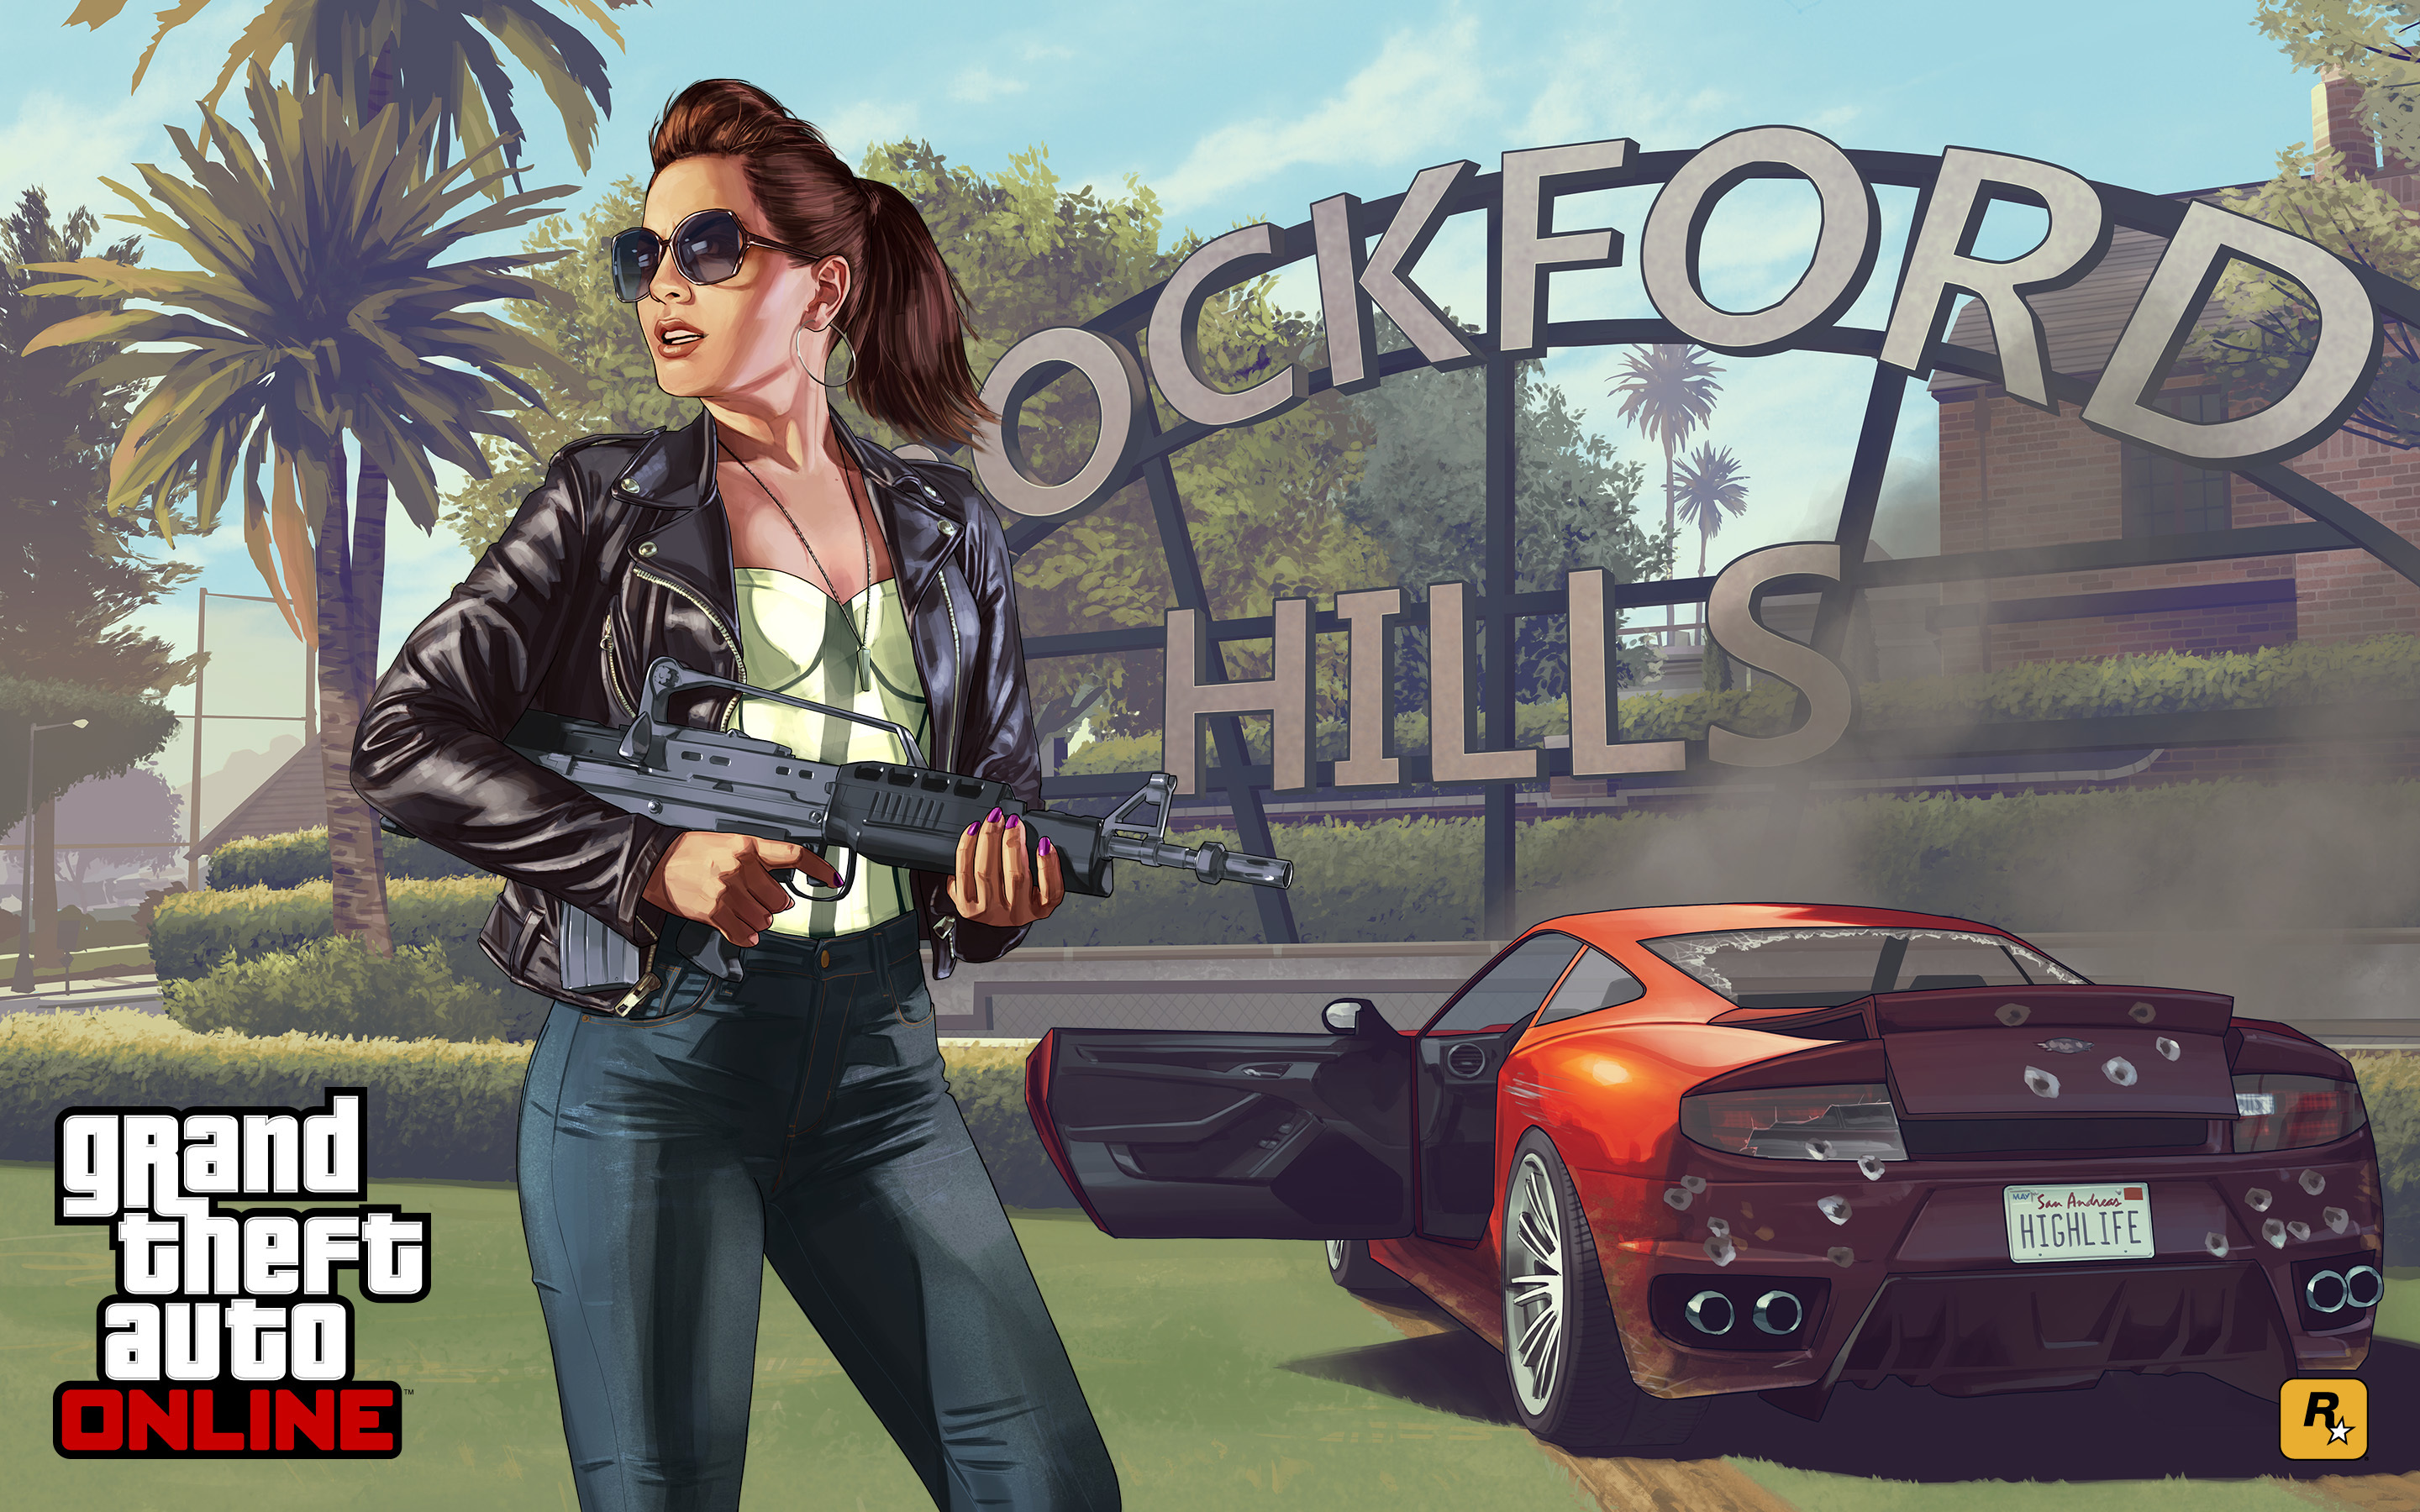 Grand Theft Auto V Gta Online Concept Art Wallpaper